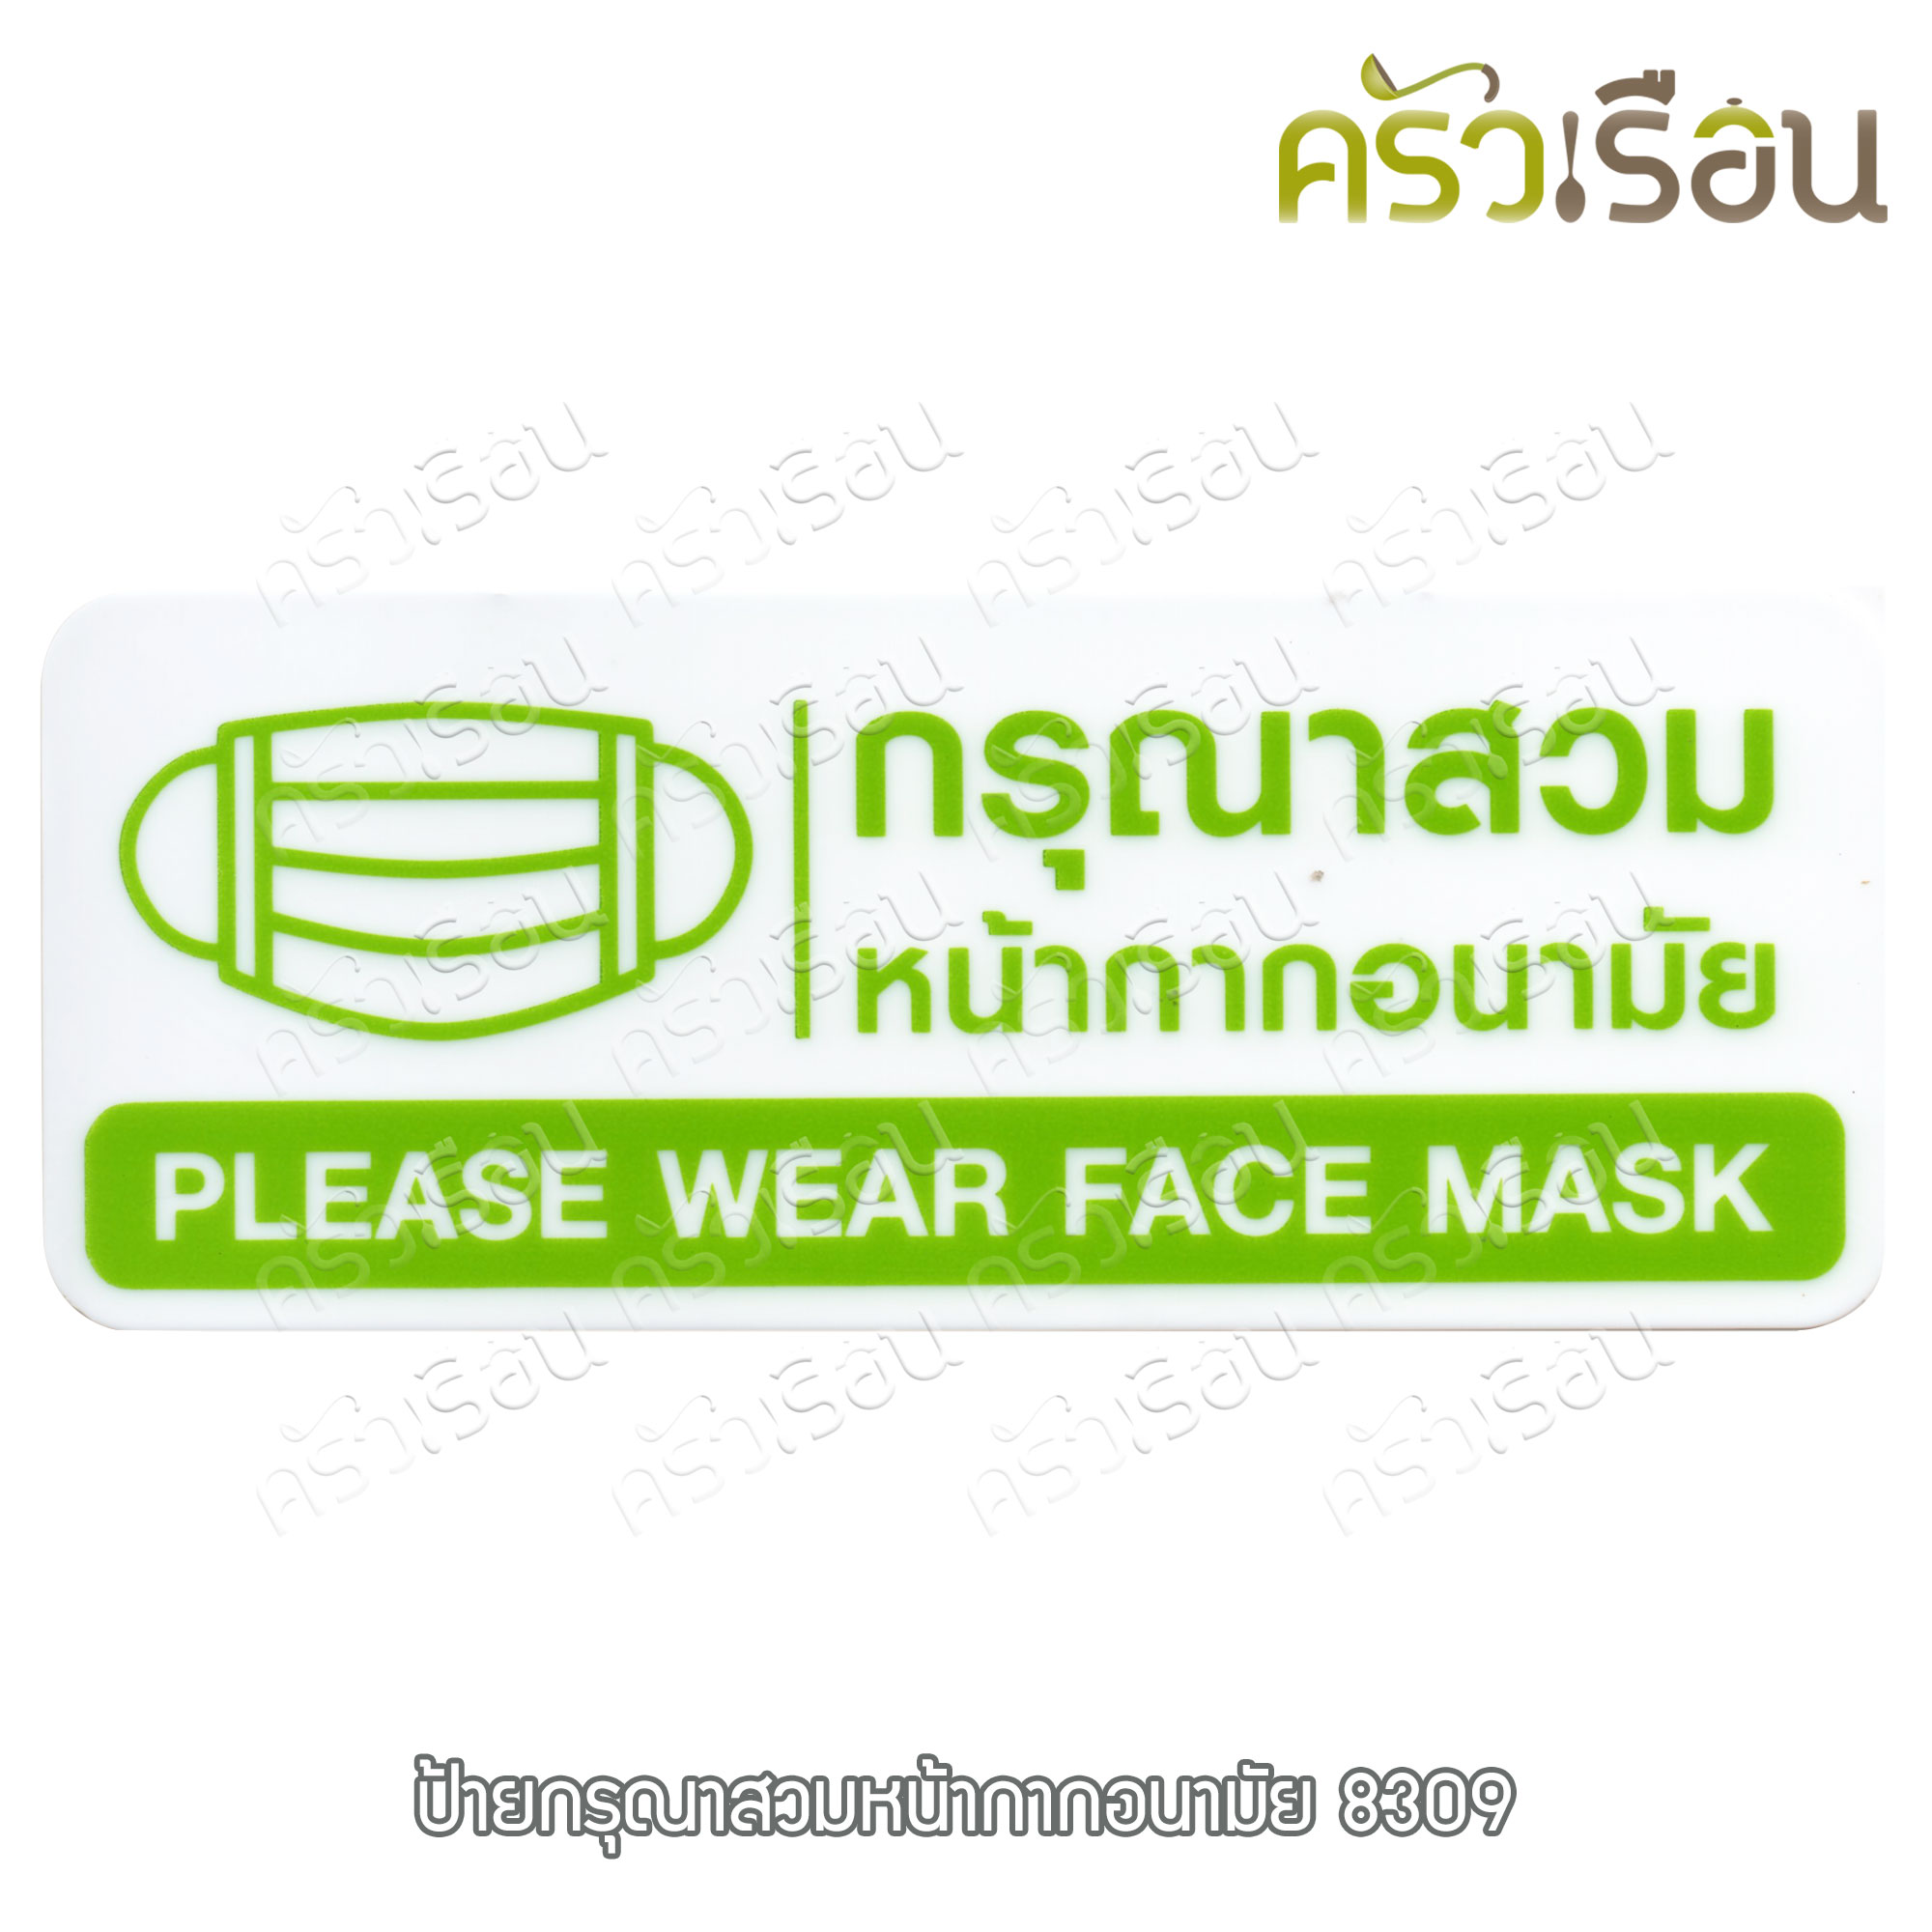 ป้าย - กรุณาสวมหน้ากากอนามัย Please wear face mask #8309